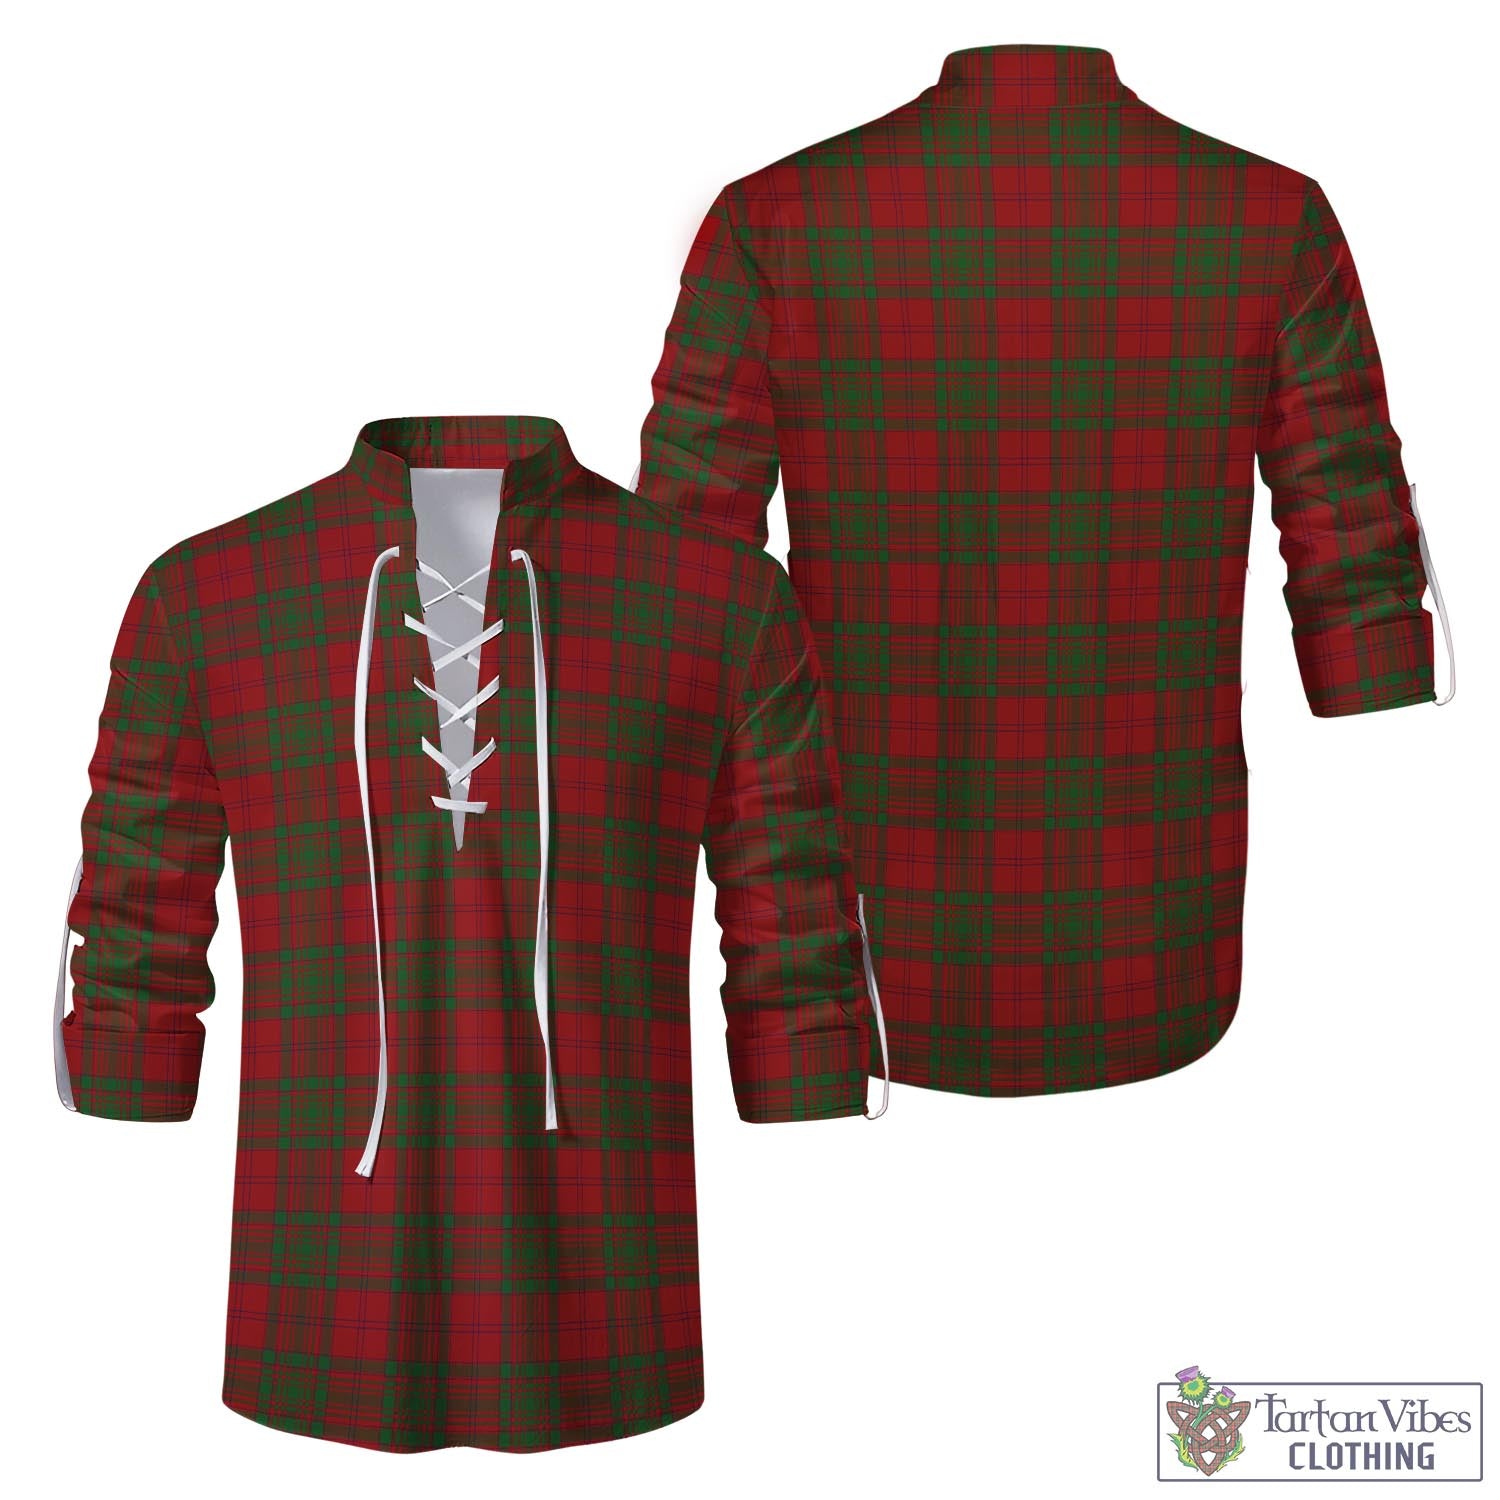 Tartan Vibes Clothing MacAlister of Glenbarr Tartan Men's Scottish Traditional Jacobite Ghillie Kilt Shirt